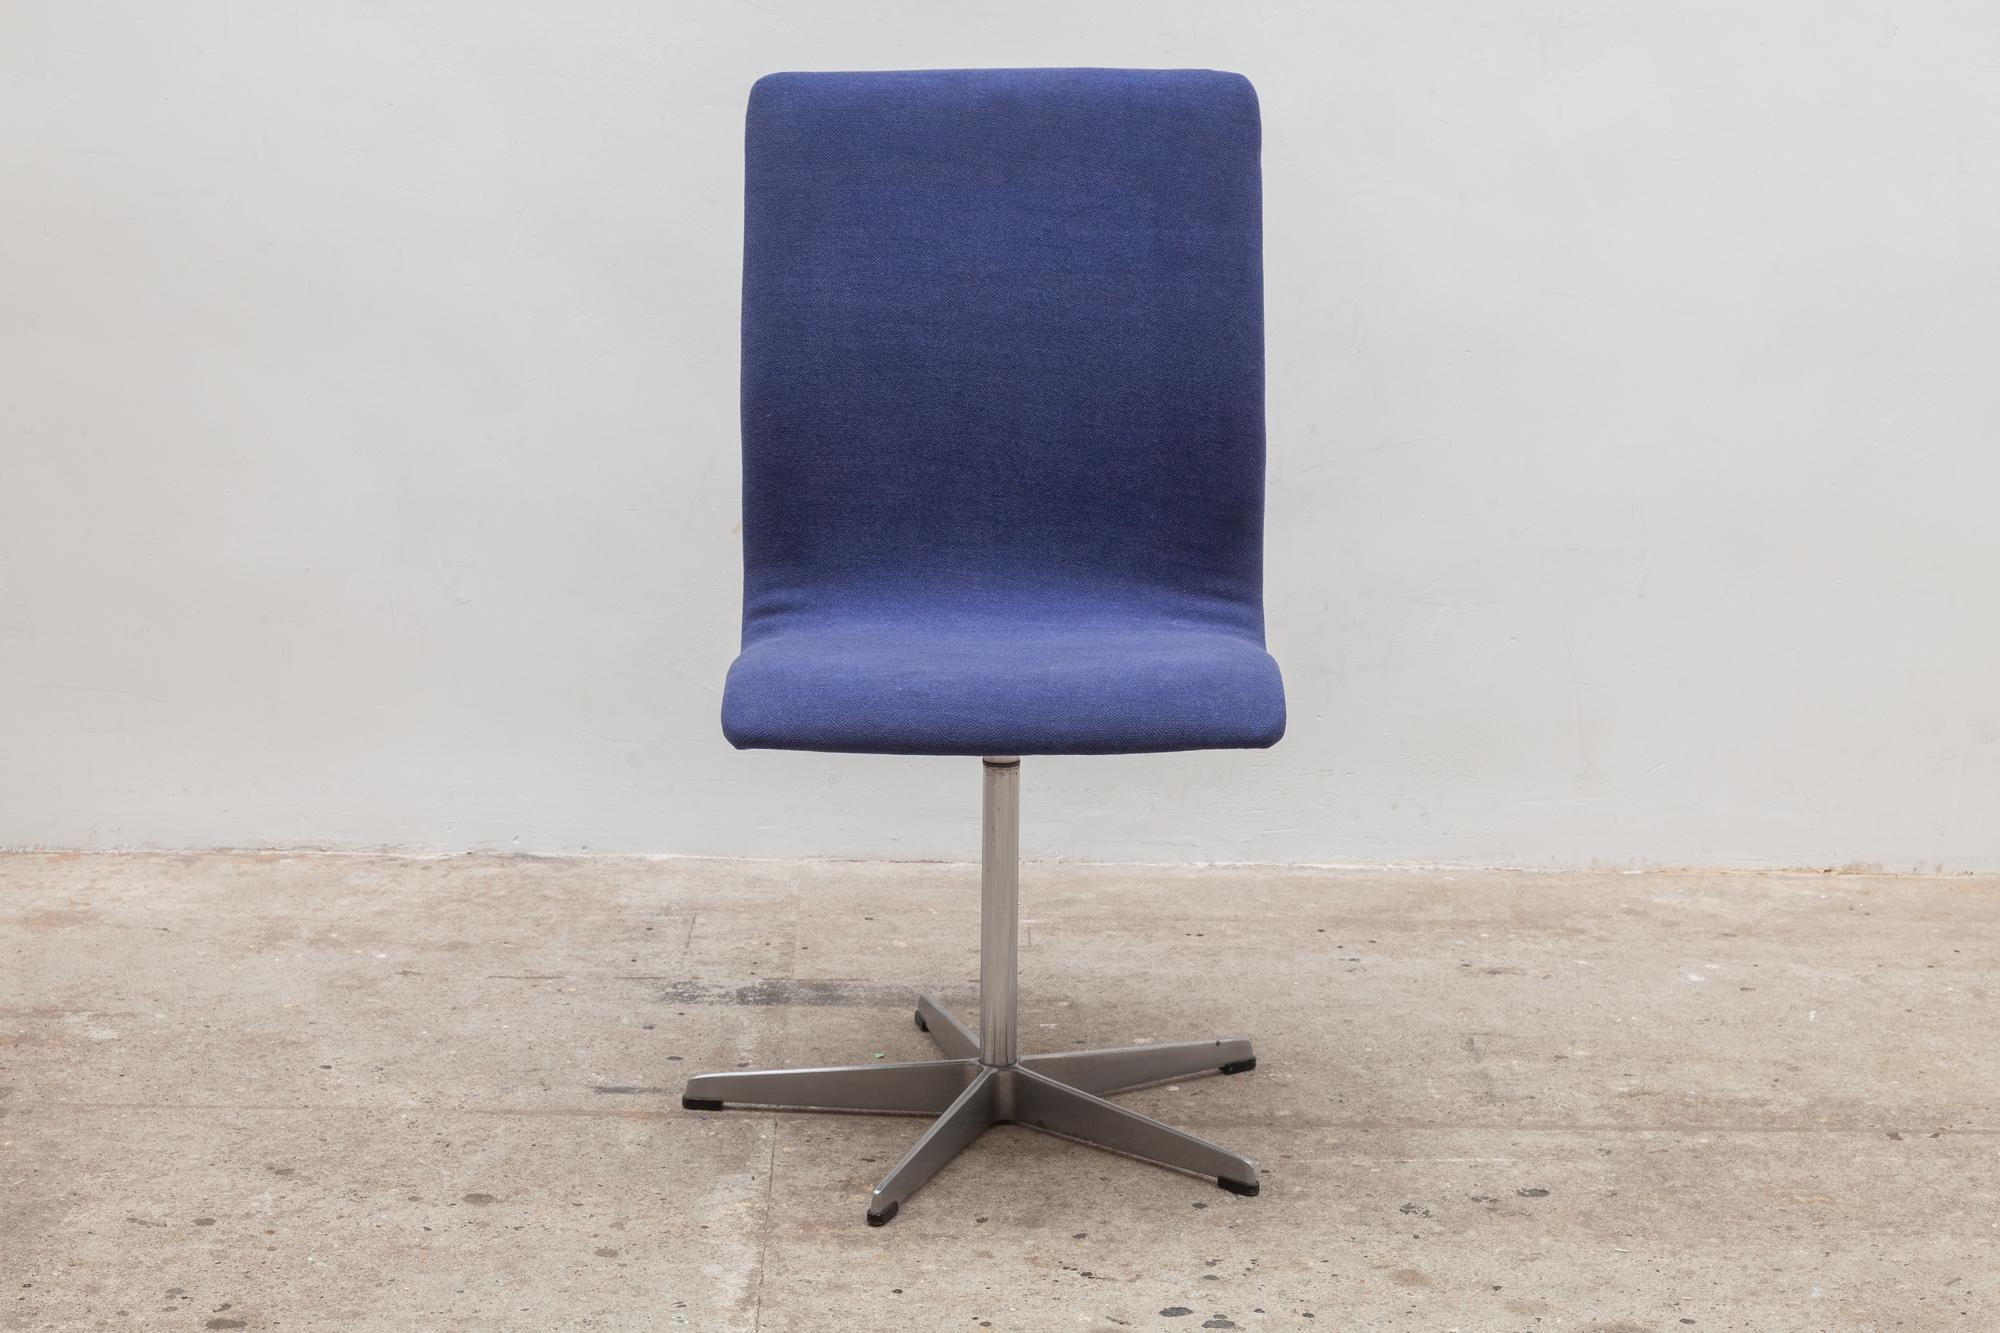 Mid-20th Century Fritz Hansen Oxford Desk Chair Designed by Arne Jacobsen, 1963 Denmark For Sale